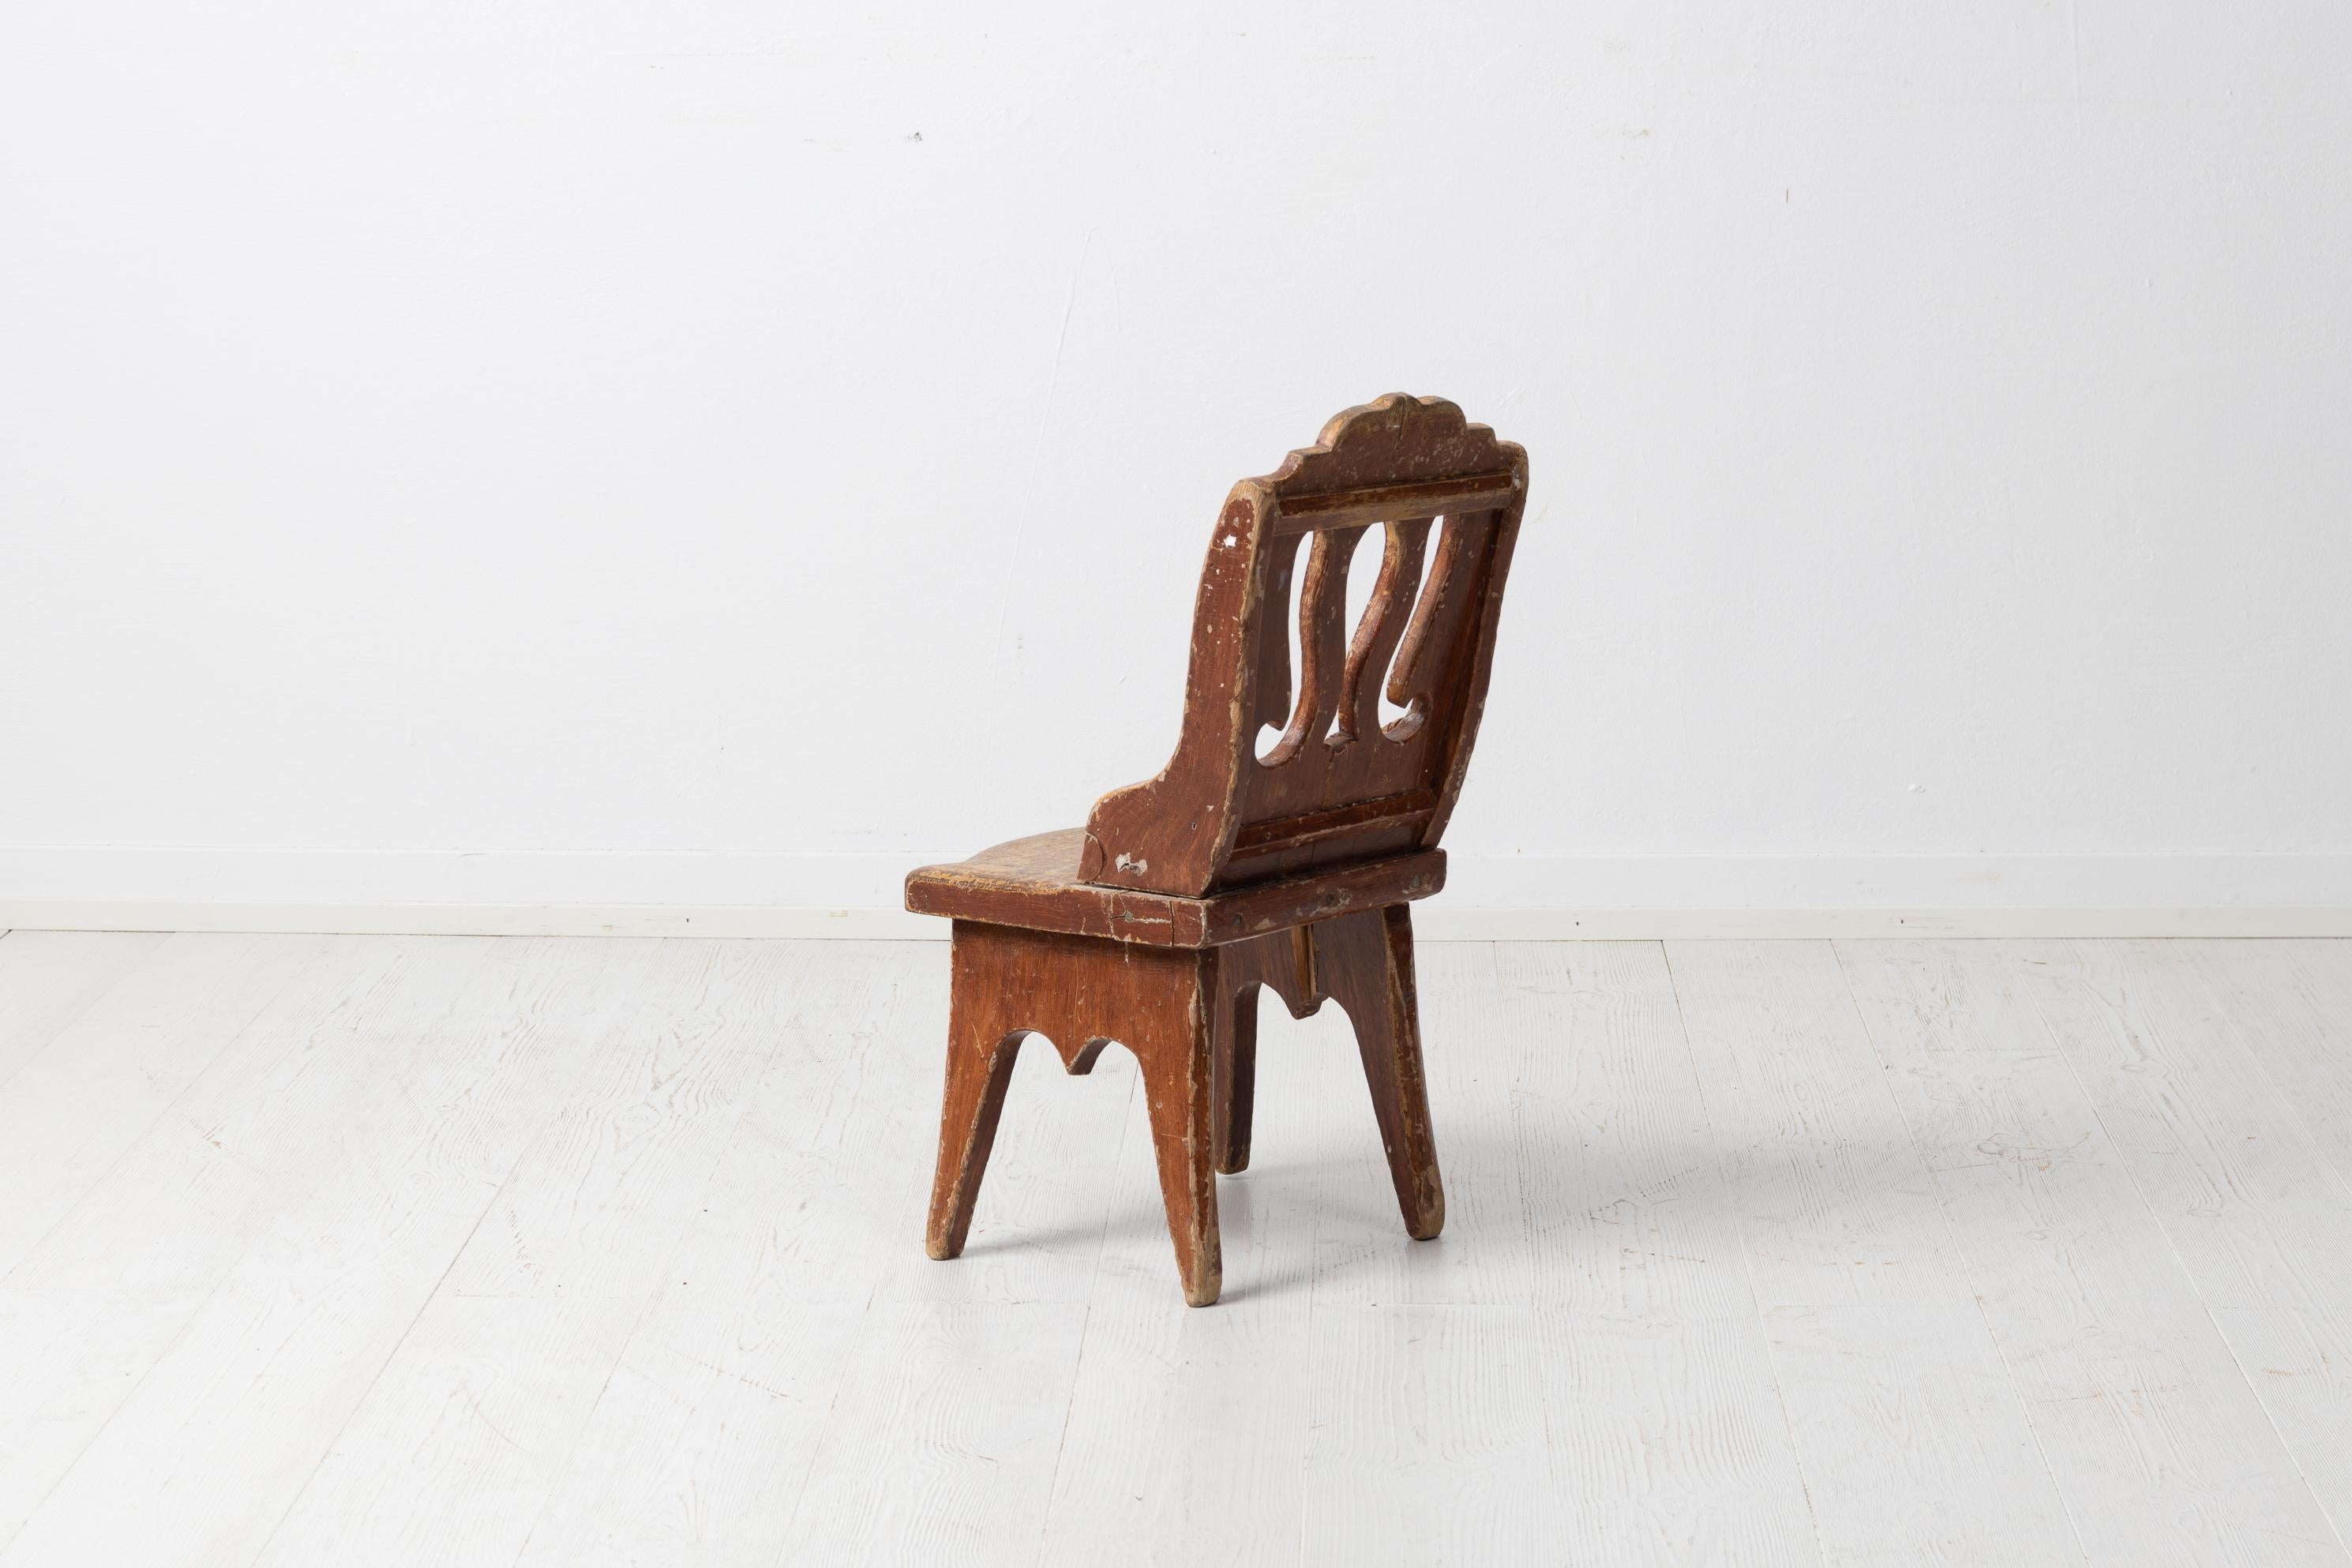 Hand-Crafted Swedish Antique Folk Art Children's Chair